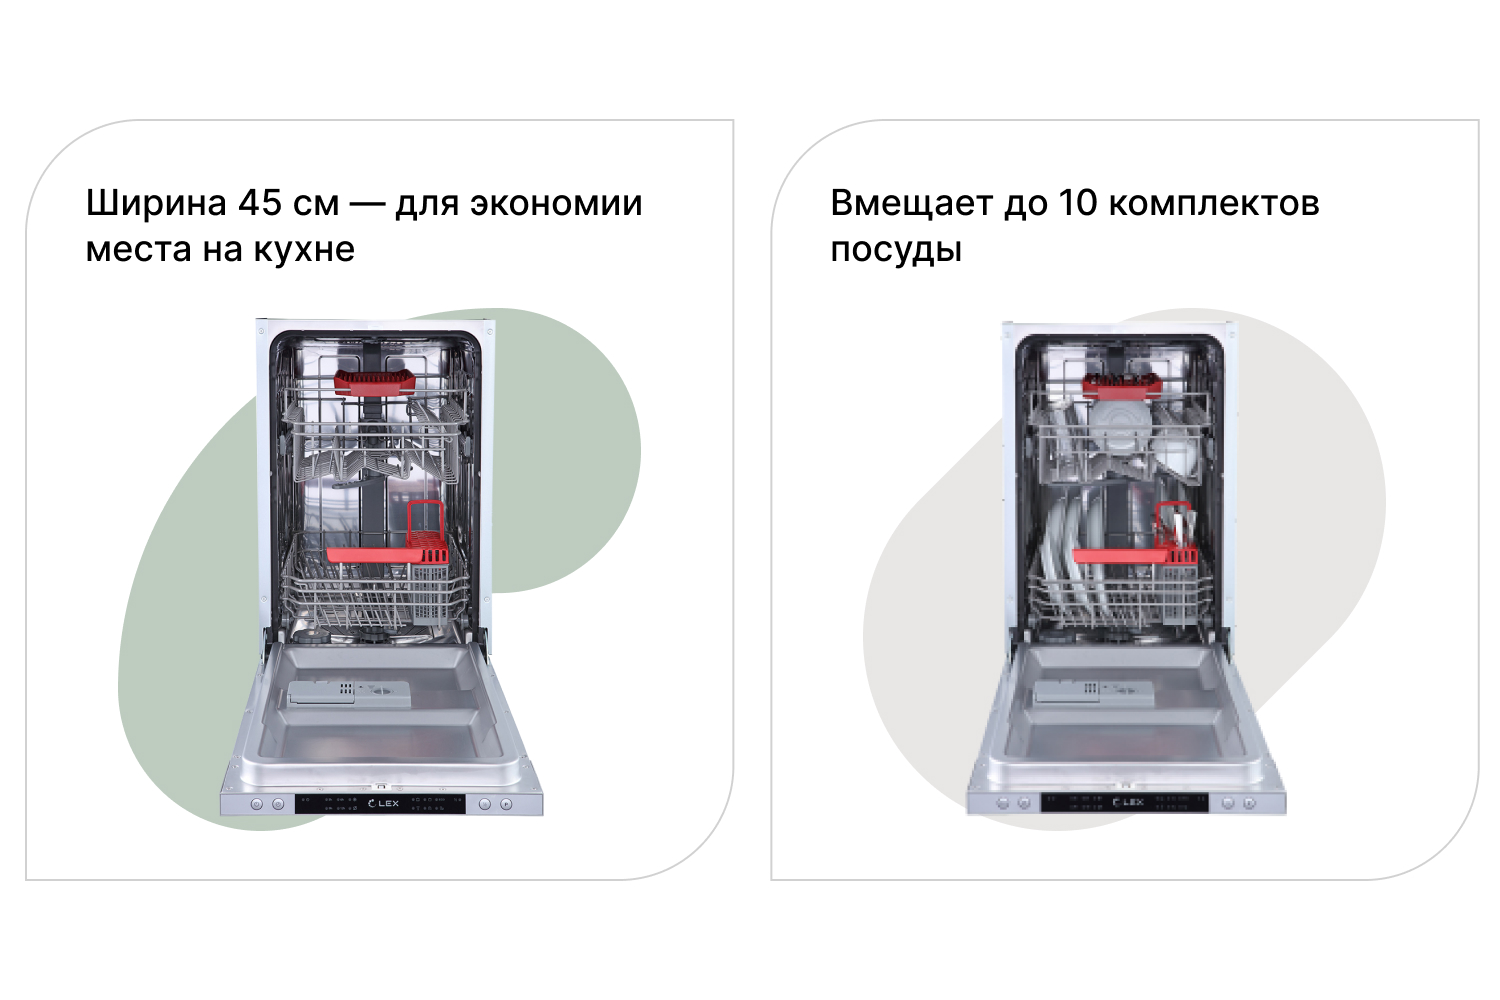 Встраиваемая посудомоечная машина PM 4563 B